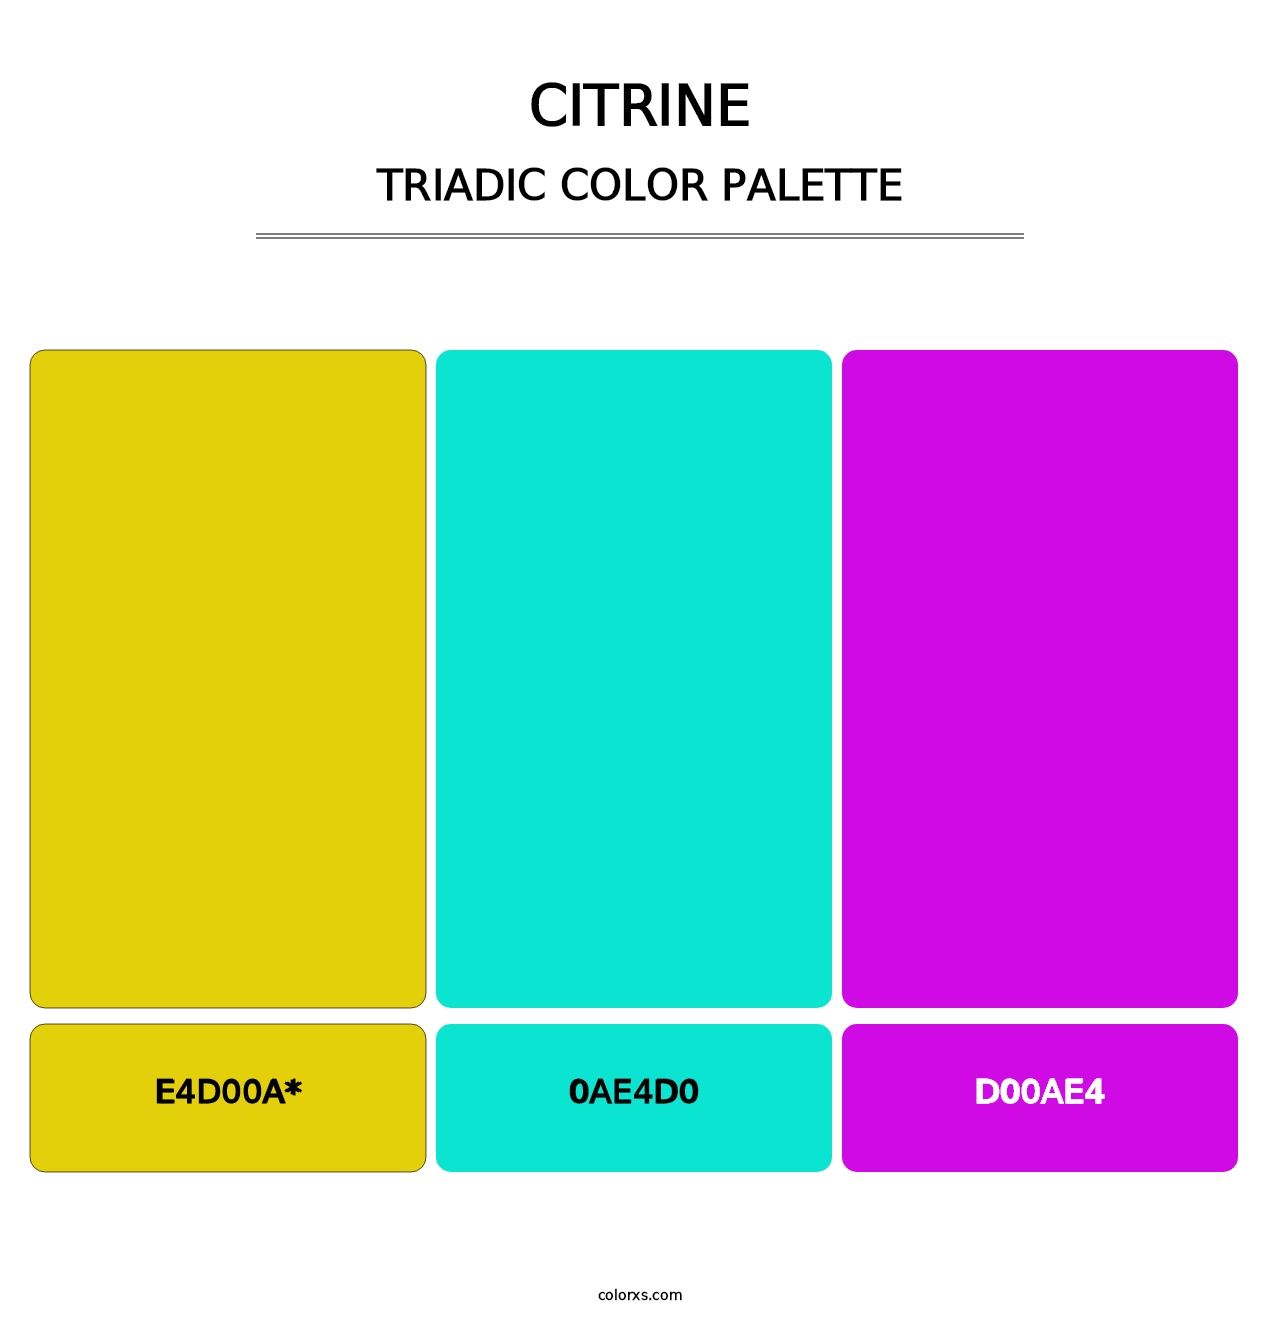 Citrine - Triadic Color Palette